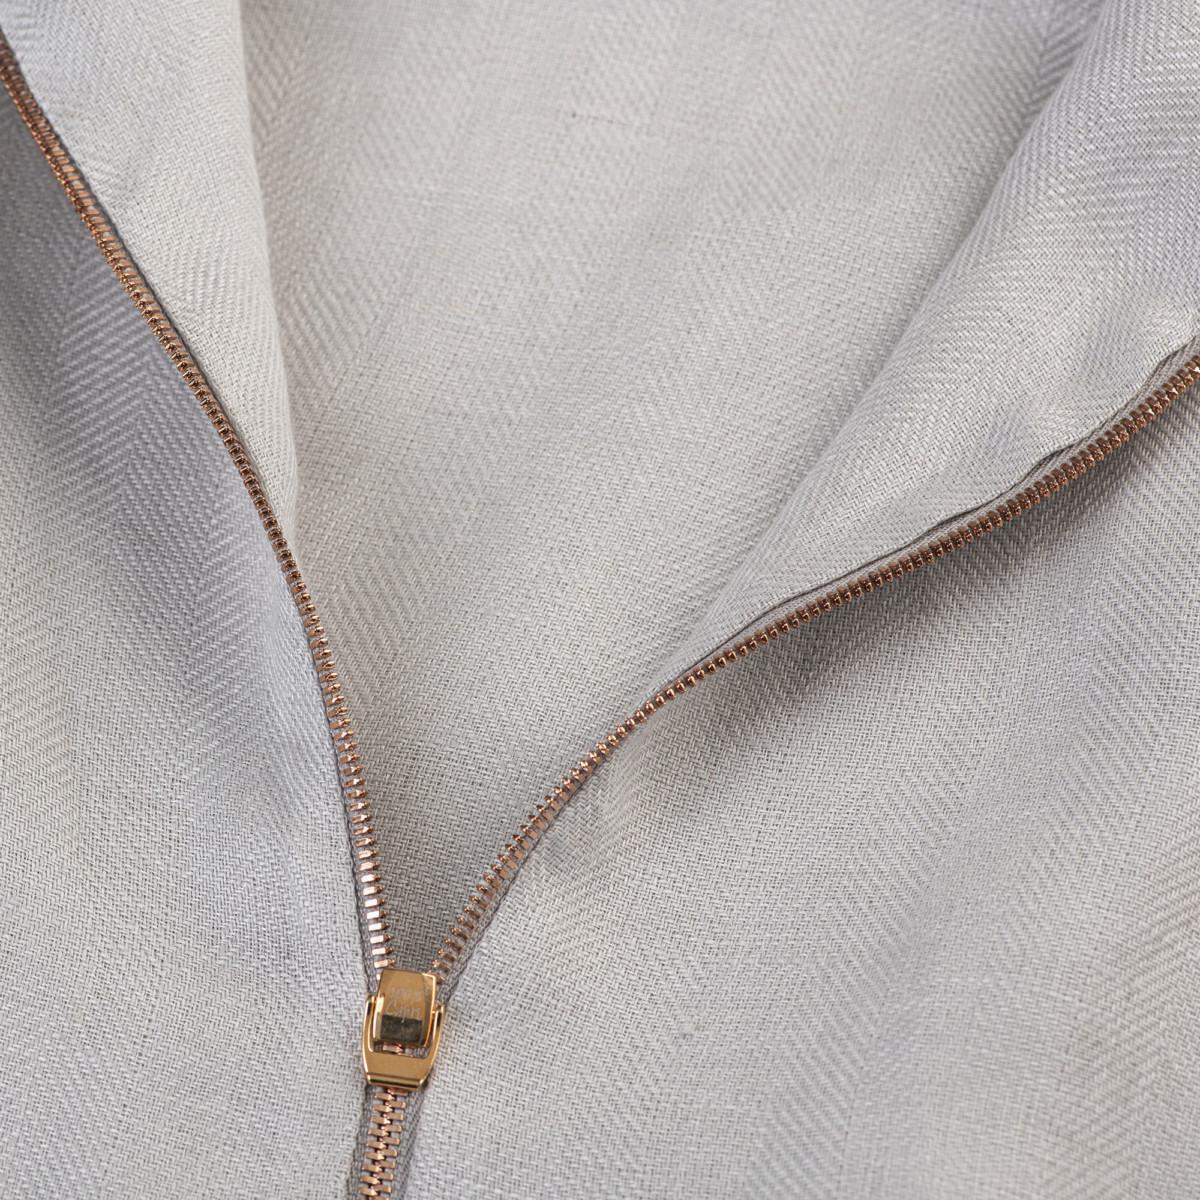 Tuta Zip  for woman 100% Capri light grey linen jumpsuit detail